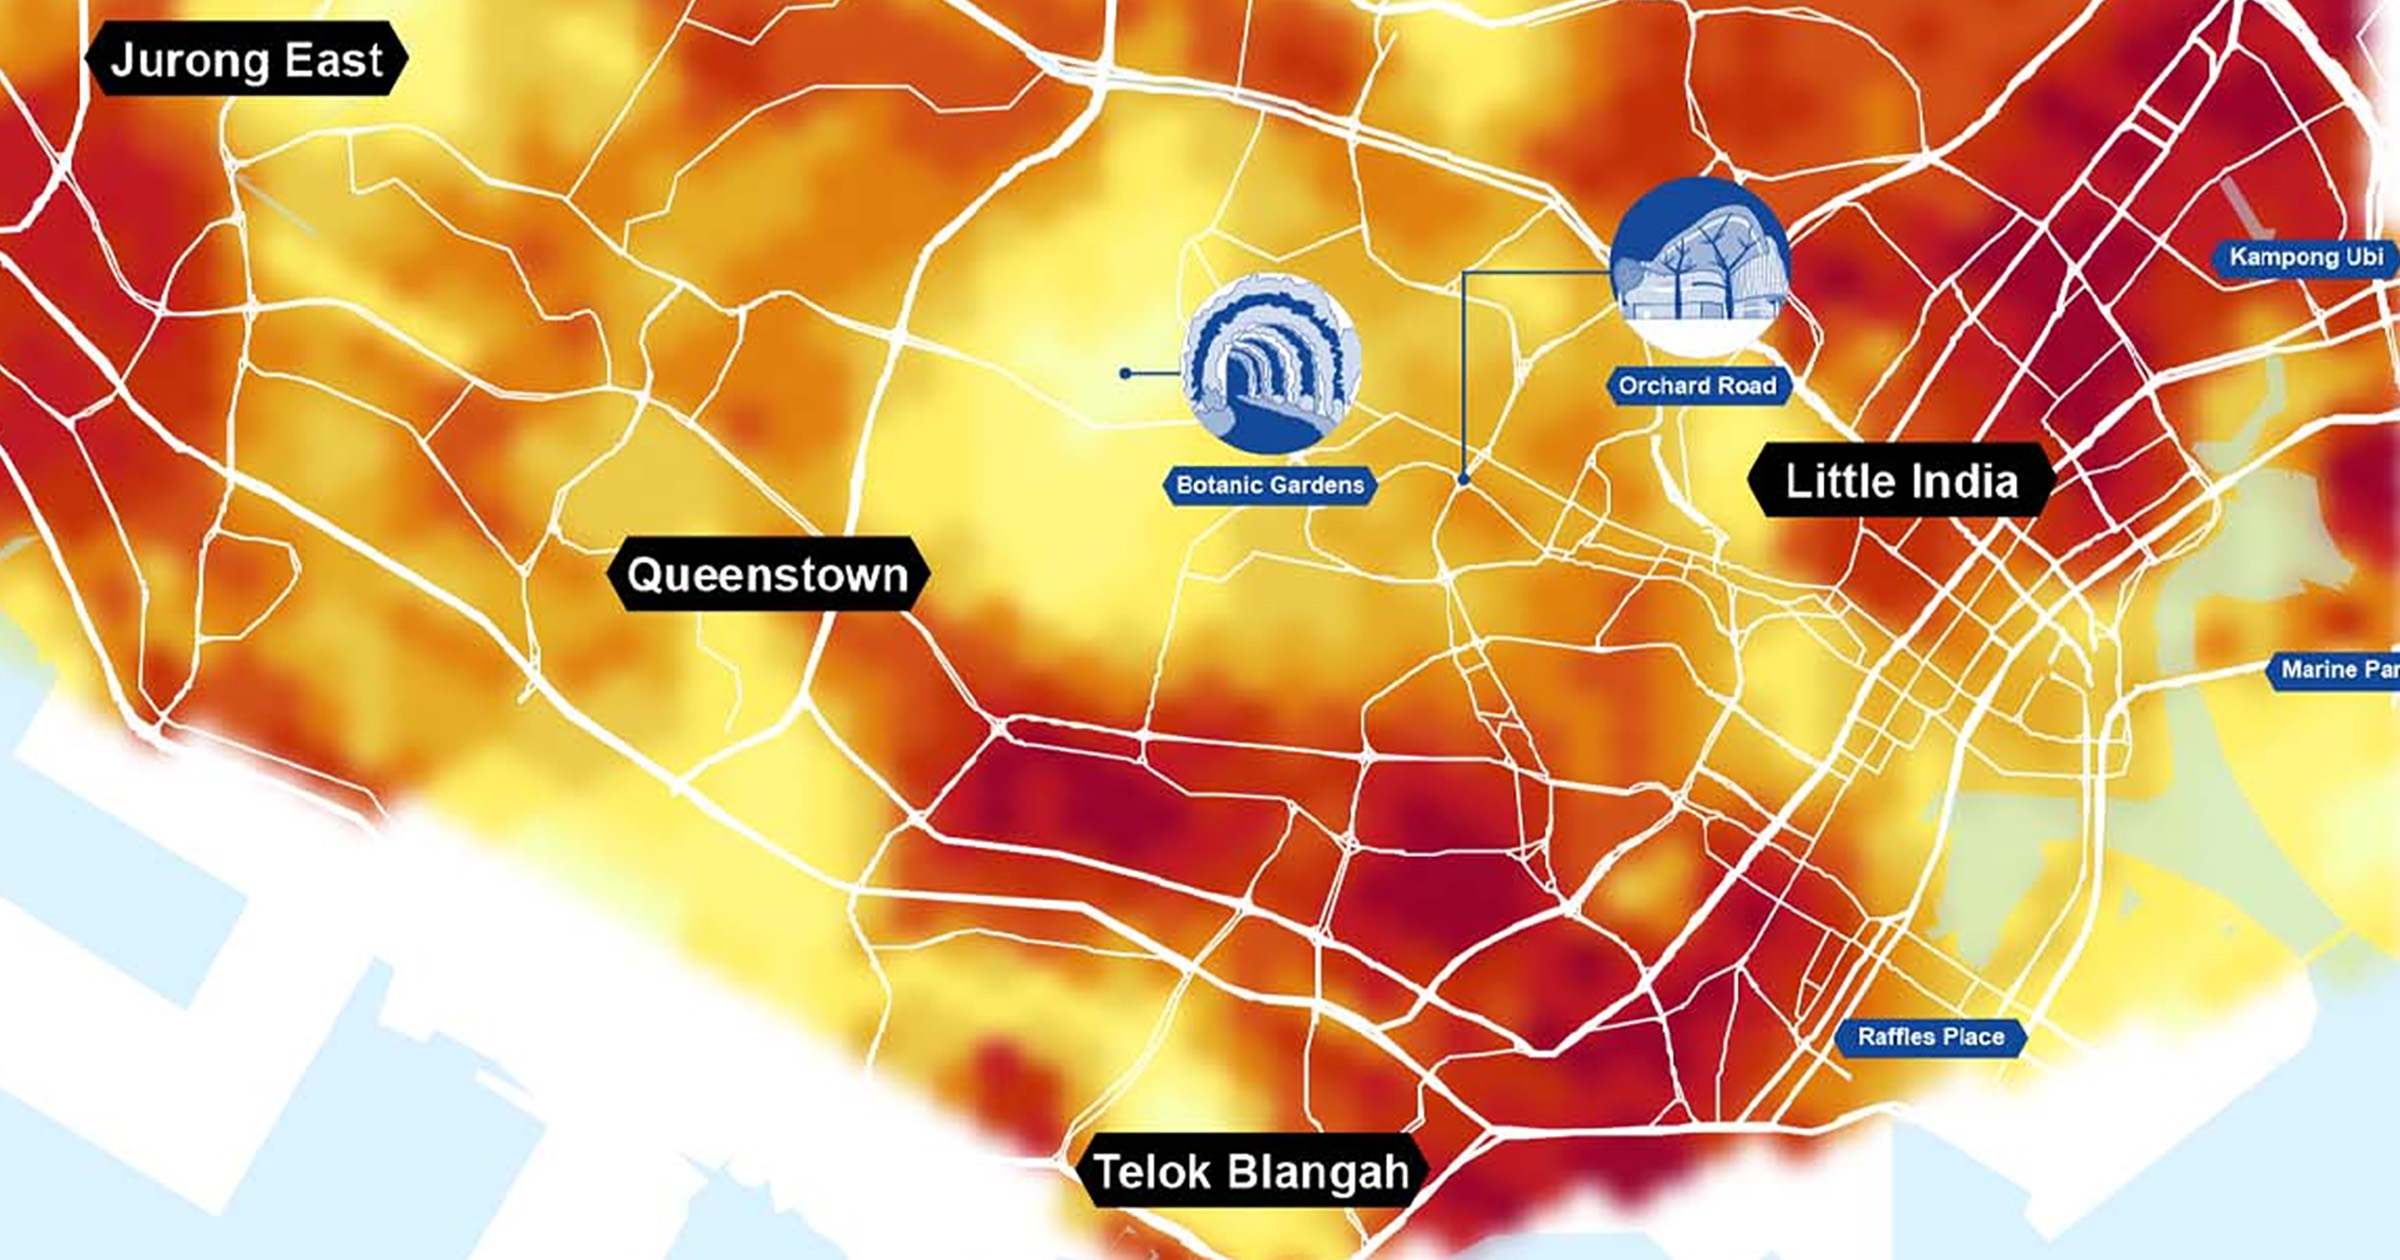 Fresco en Singapur: se mapean los lugares más cálidos y más fríos de la ciudad, mostrando una diferencia de hasta 6,5°C